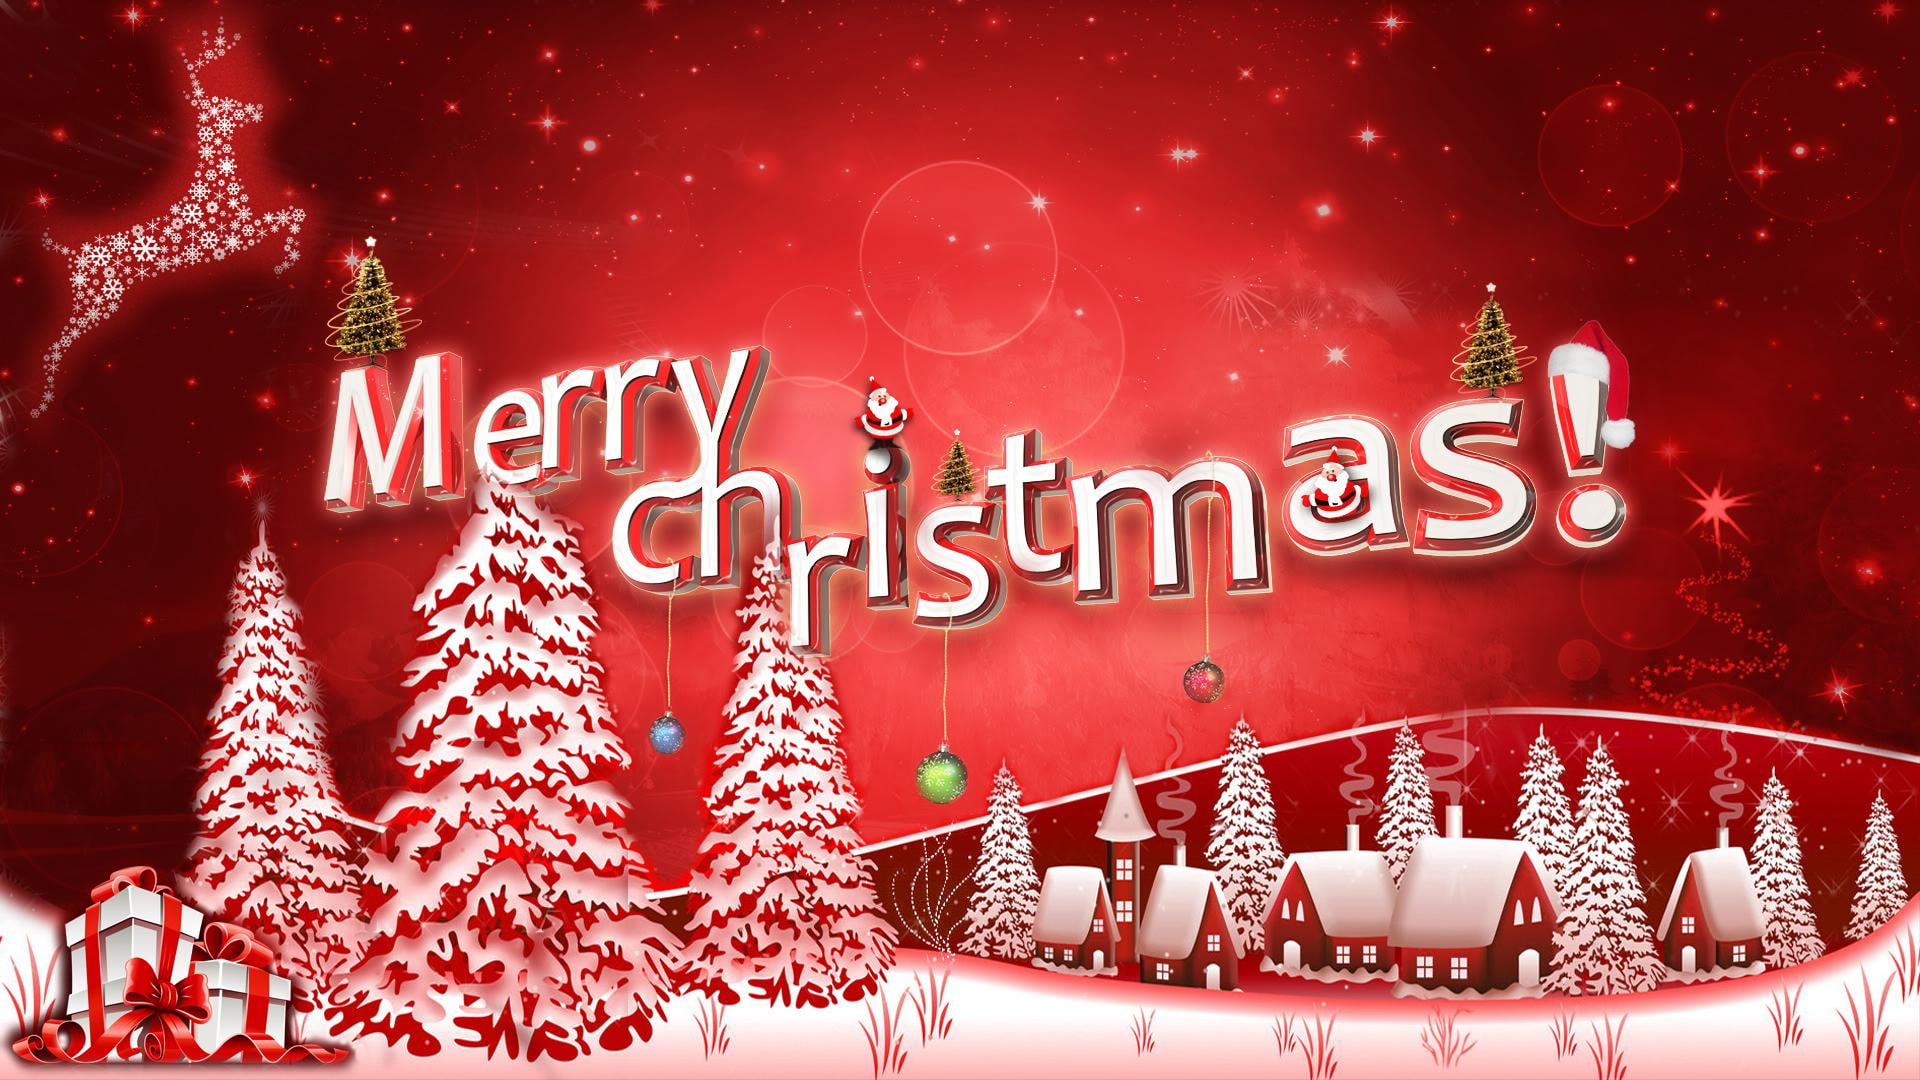 We Wish you a Merry Christmas - Christmas Carol